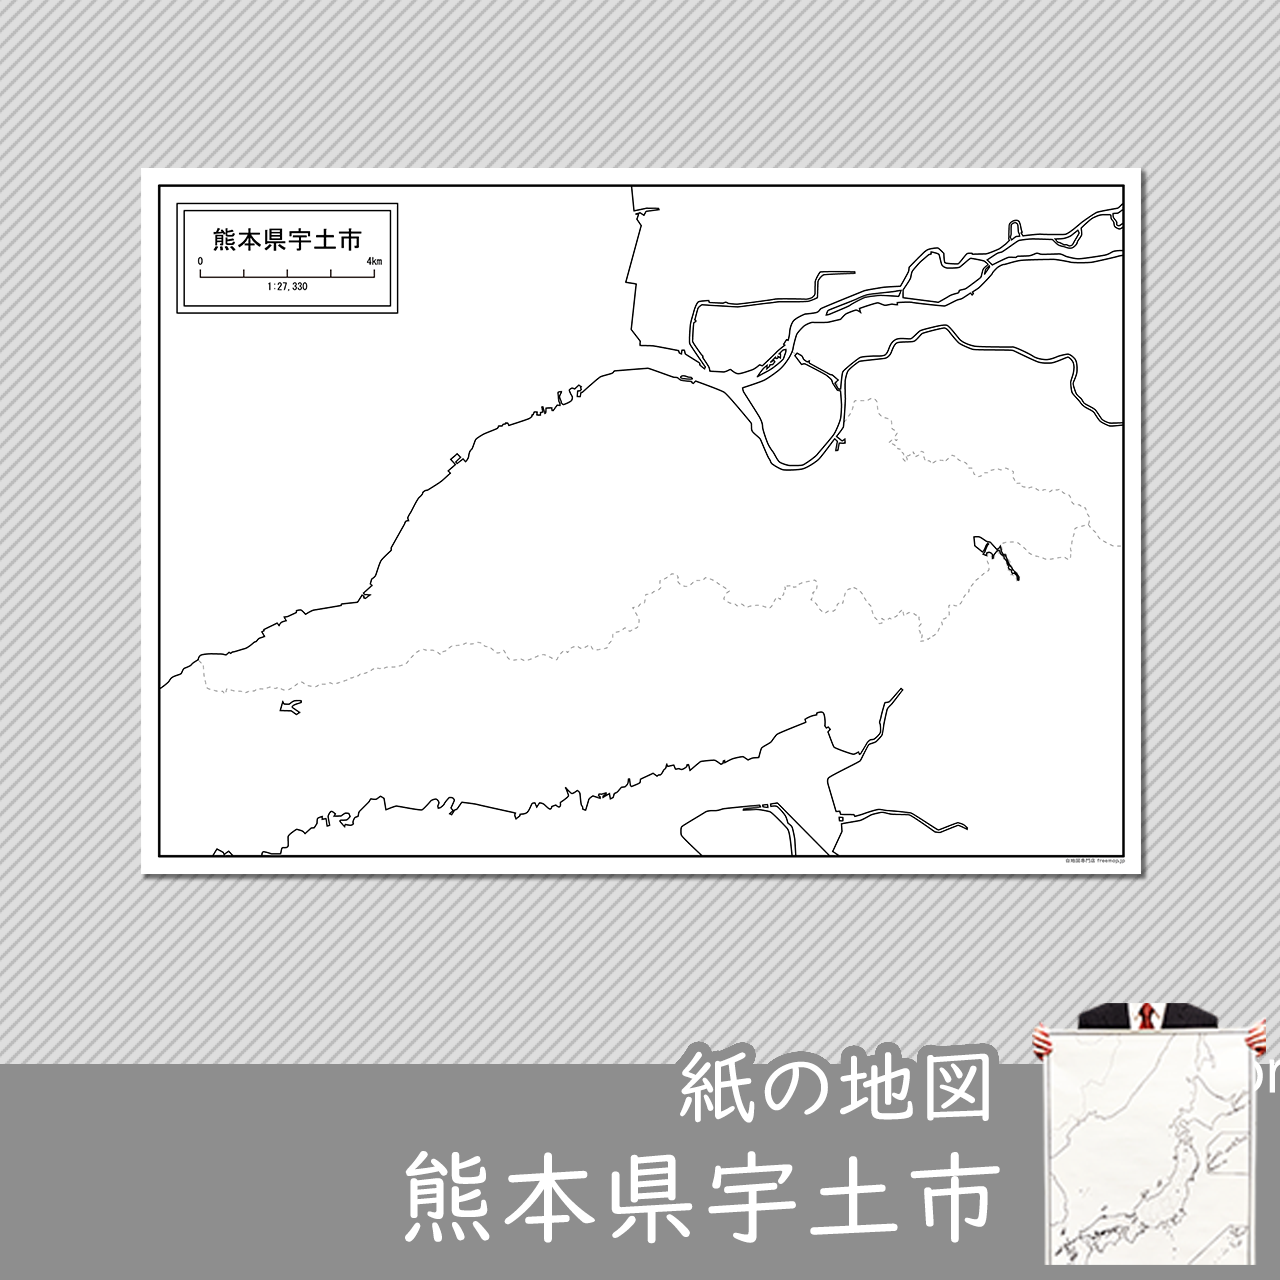 宇土市の紙の白地図のサムネイル